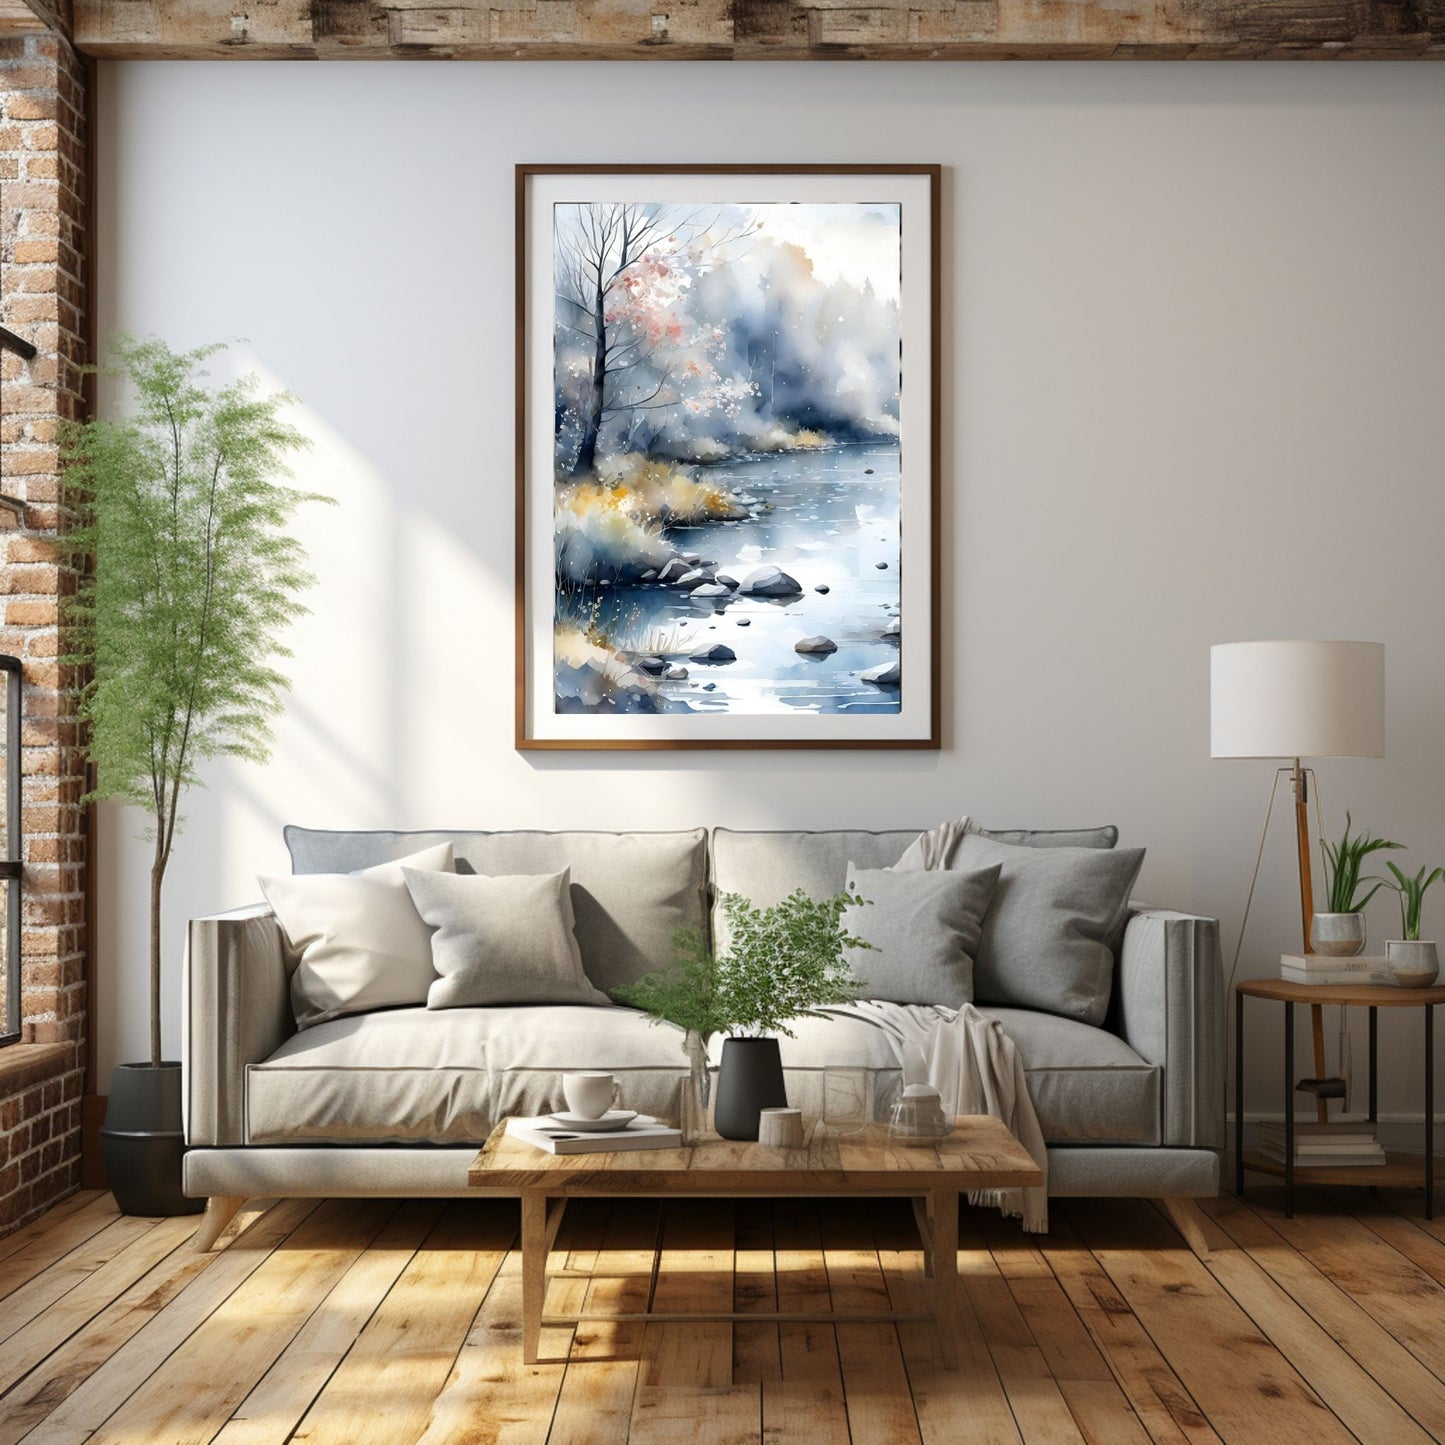 Digitalt kunstmaleri i akvarell som fanger essensen av vinterscenene med et sjarmerende landskap der snøfnugg danser i luften. Illustrasjonsfoto viser motiver som plakkat i ramme som henger over en sofa.